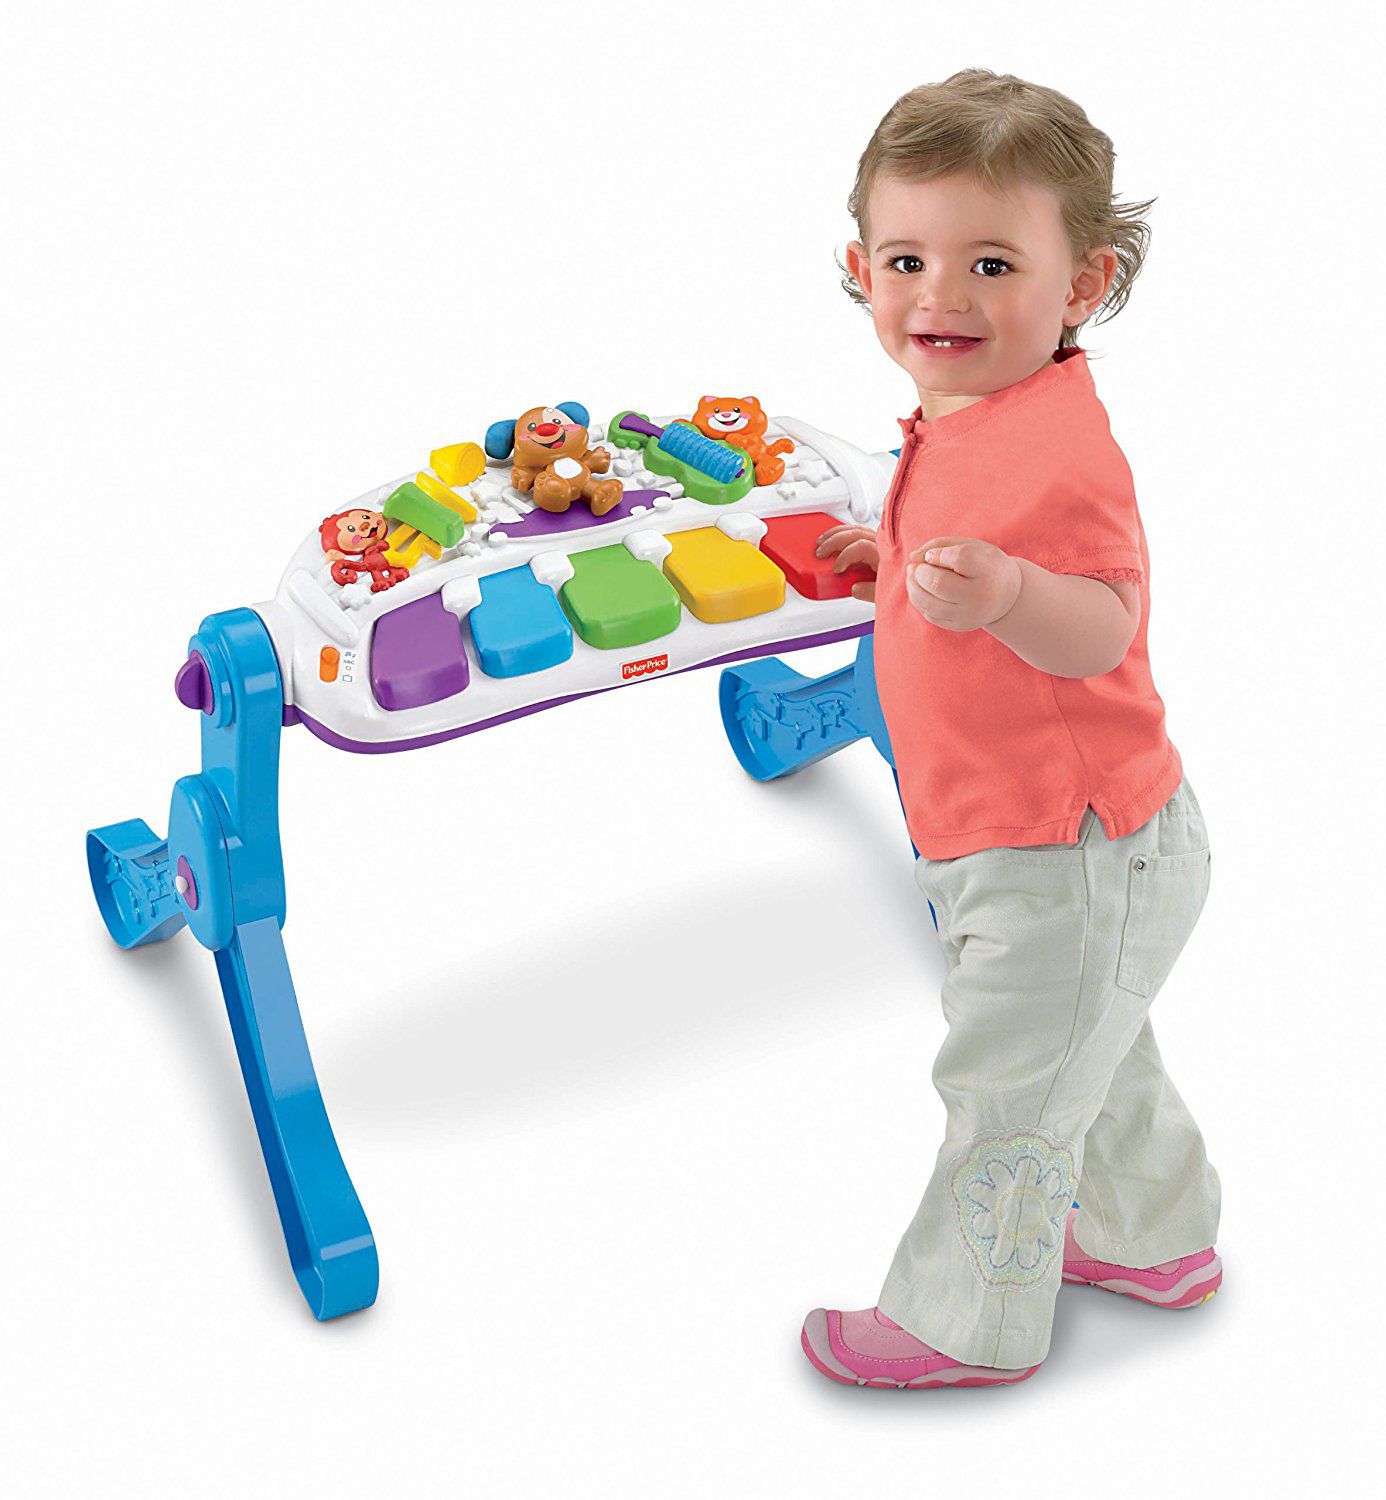 Top đồ dùng cho trẻ sơ sinh – đồ chơi thông minh cho bé 1 tuổi